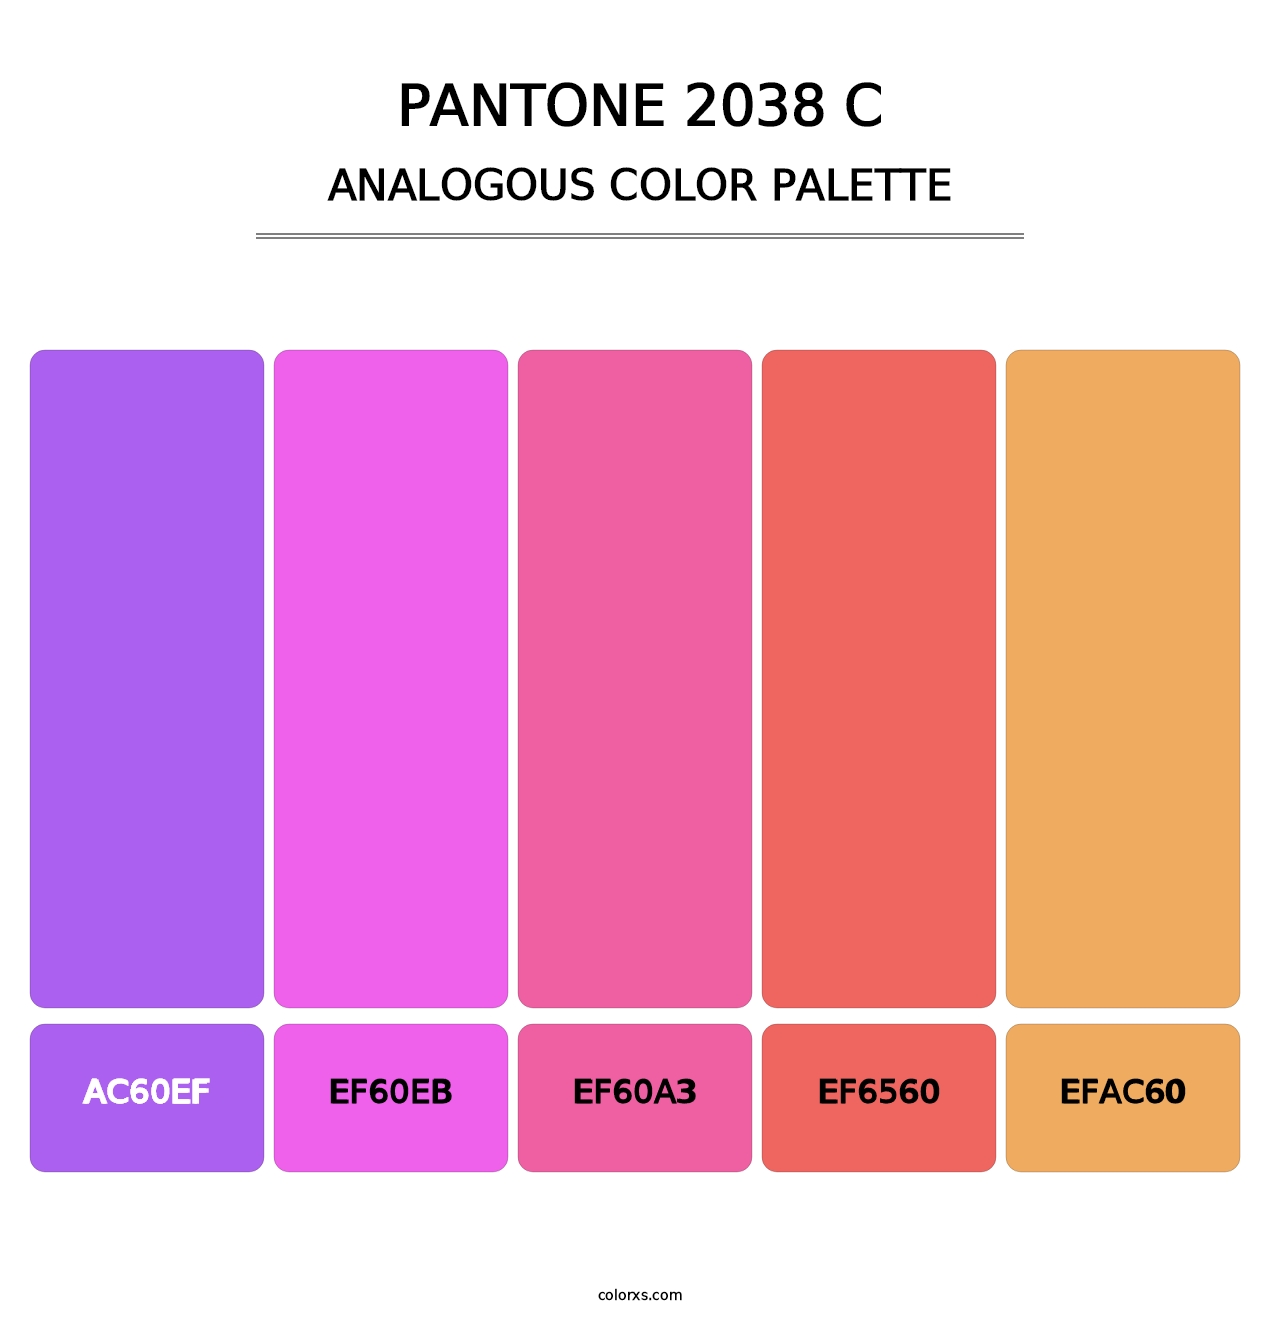 PANTONE 2038 C - Analogous Color Palette